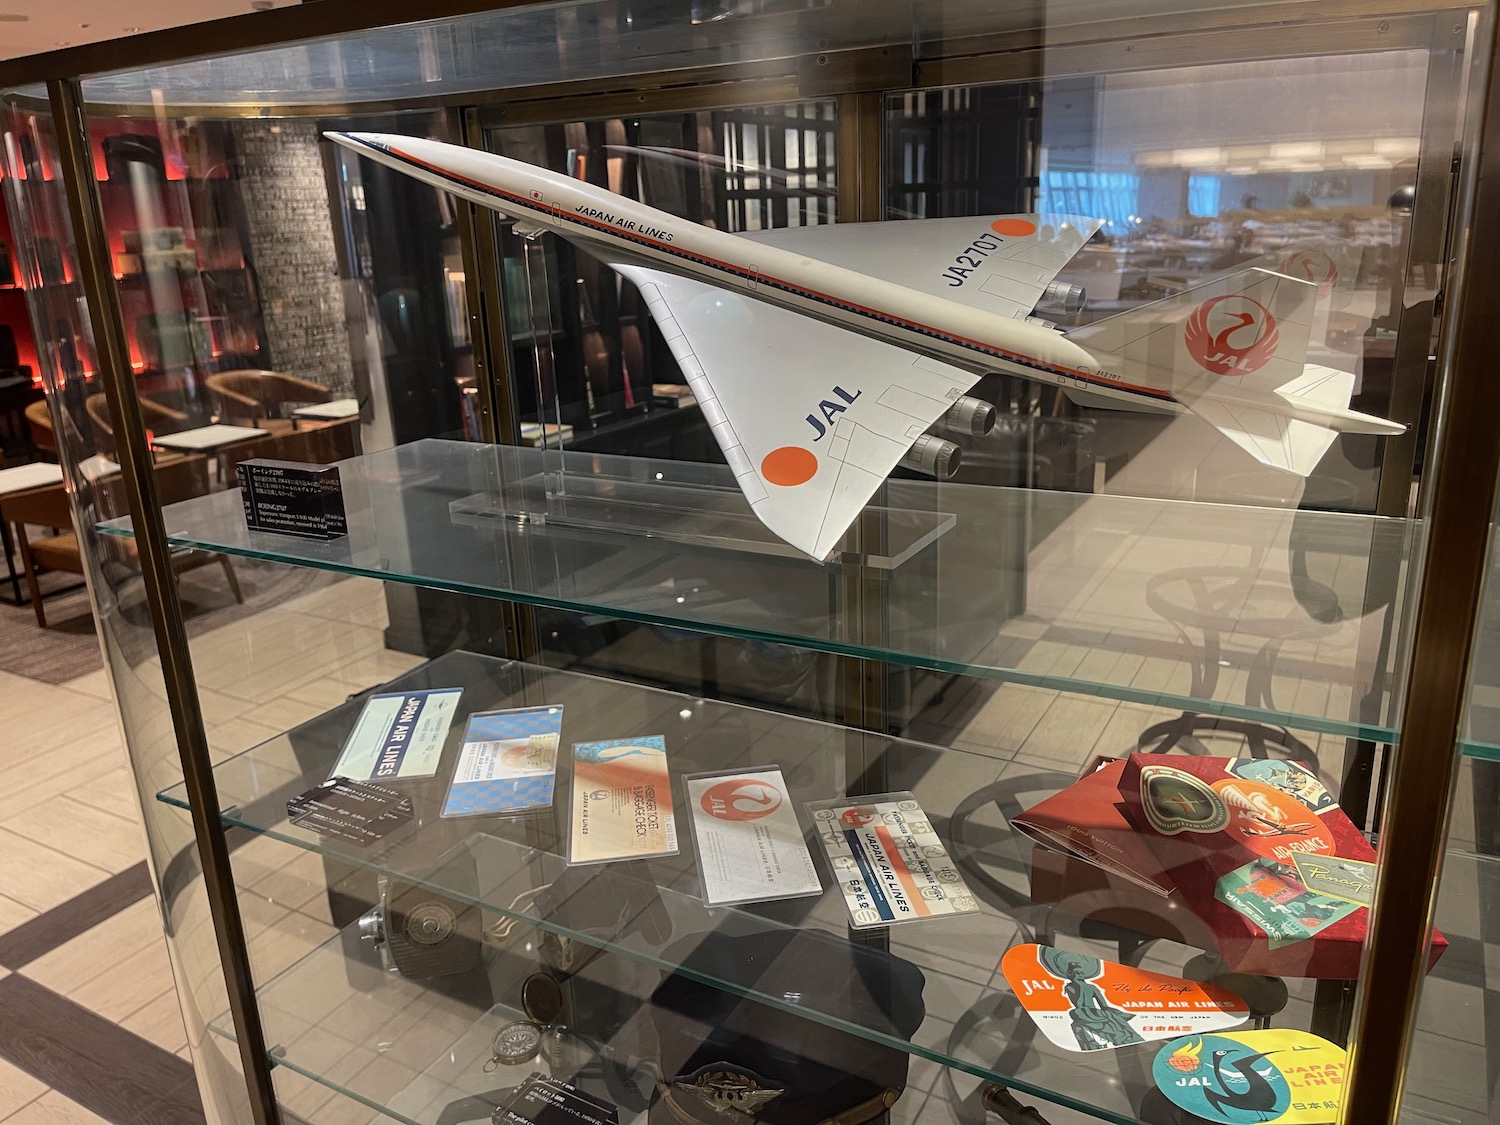 a model airplane on a glass shelf